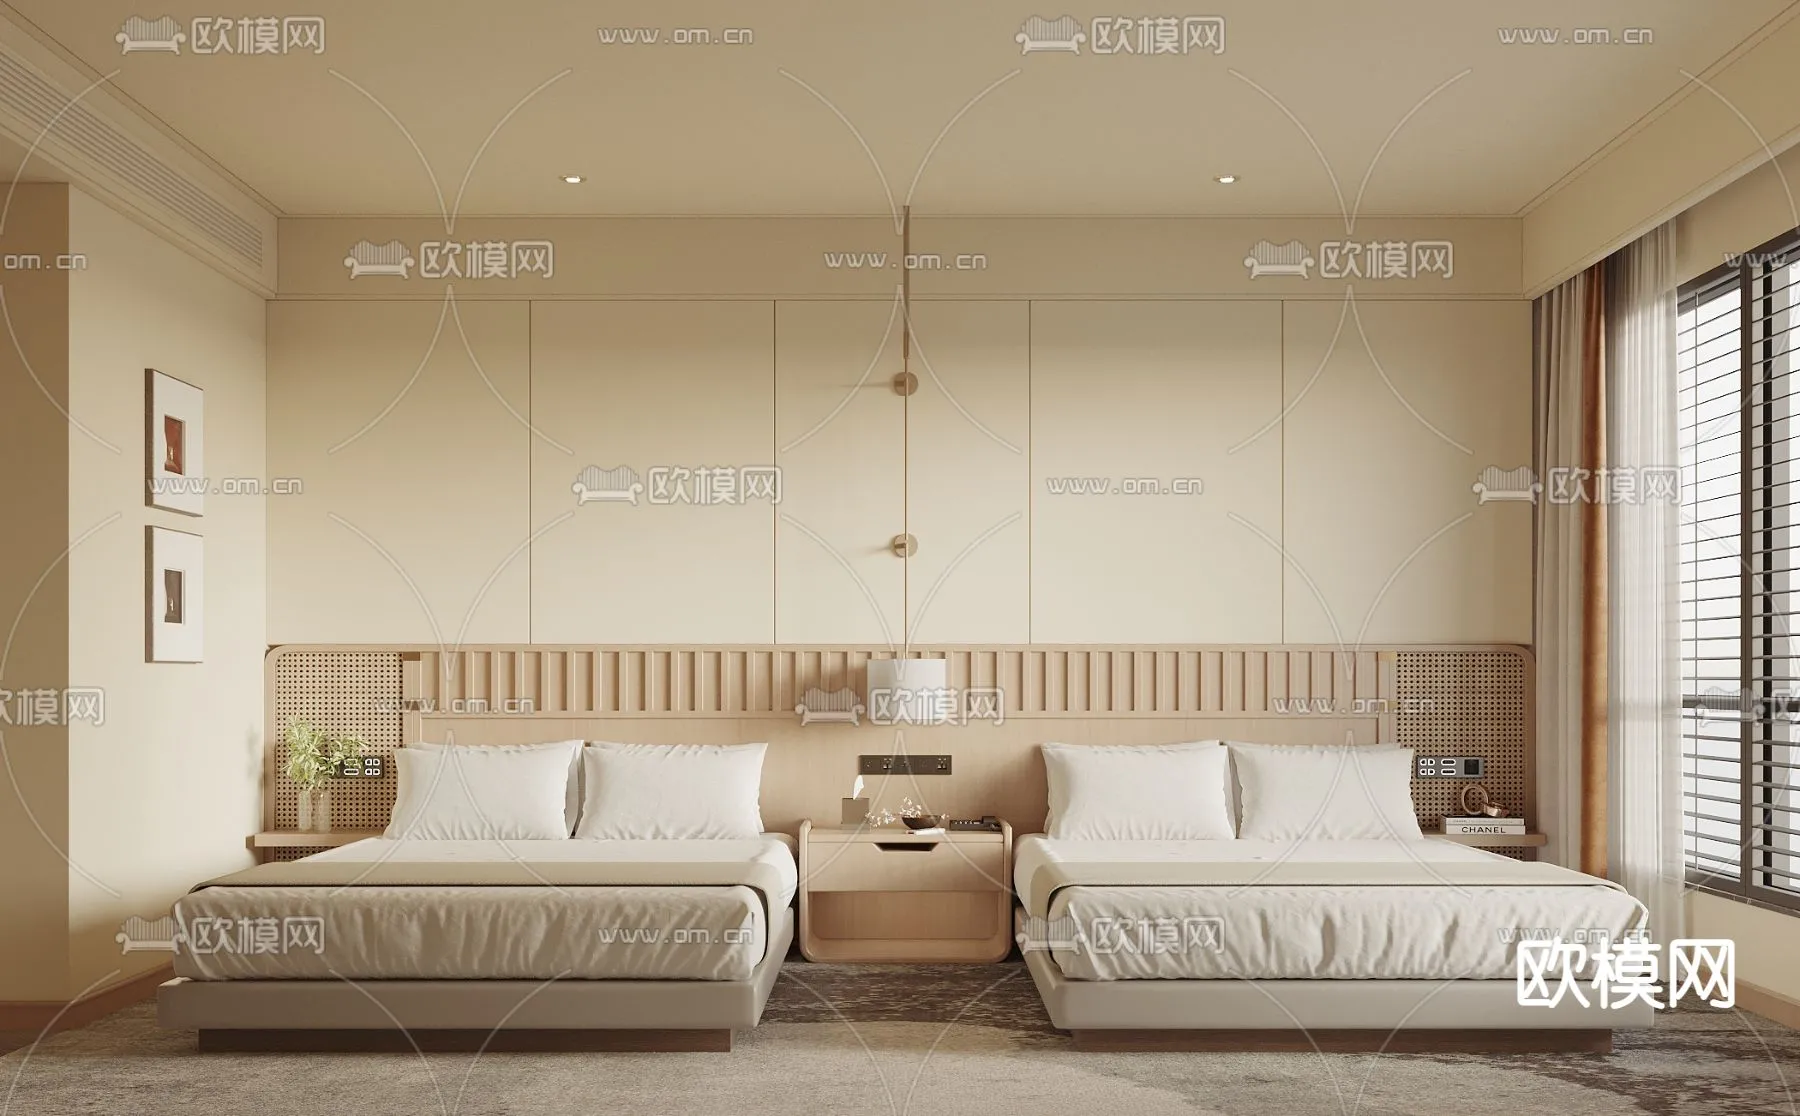 Hotel Room – Bedroom For Hotel 3D Models – 011